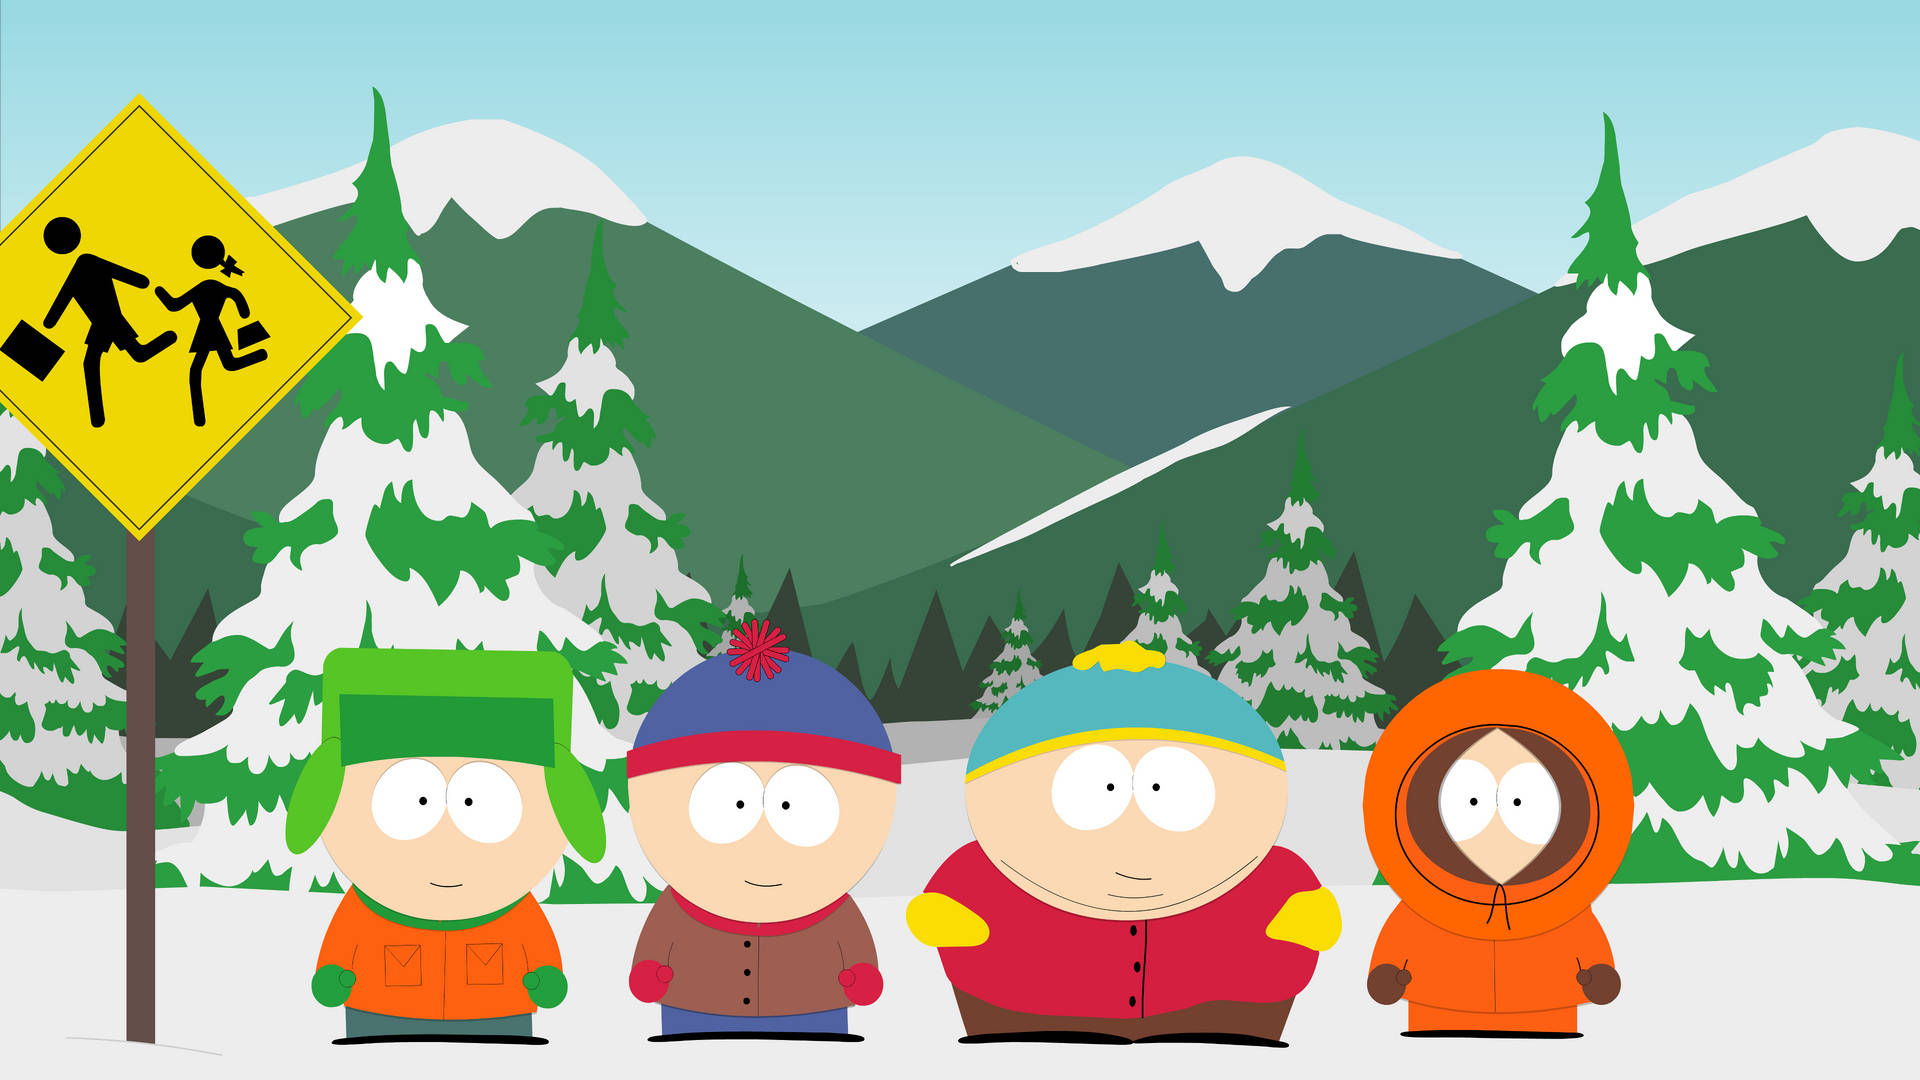 South Park Winter Season Wallpaper